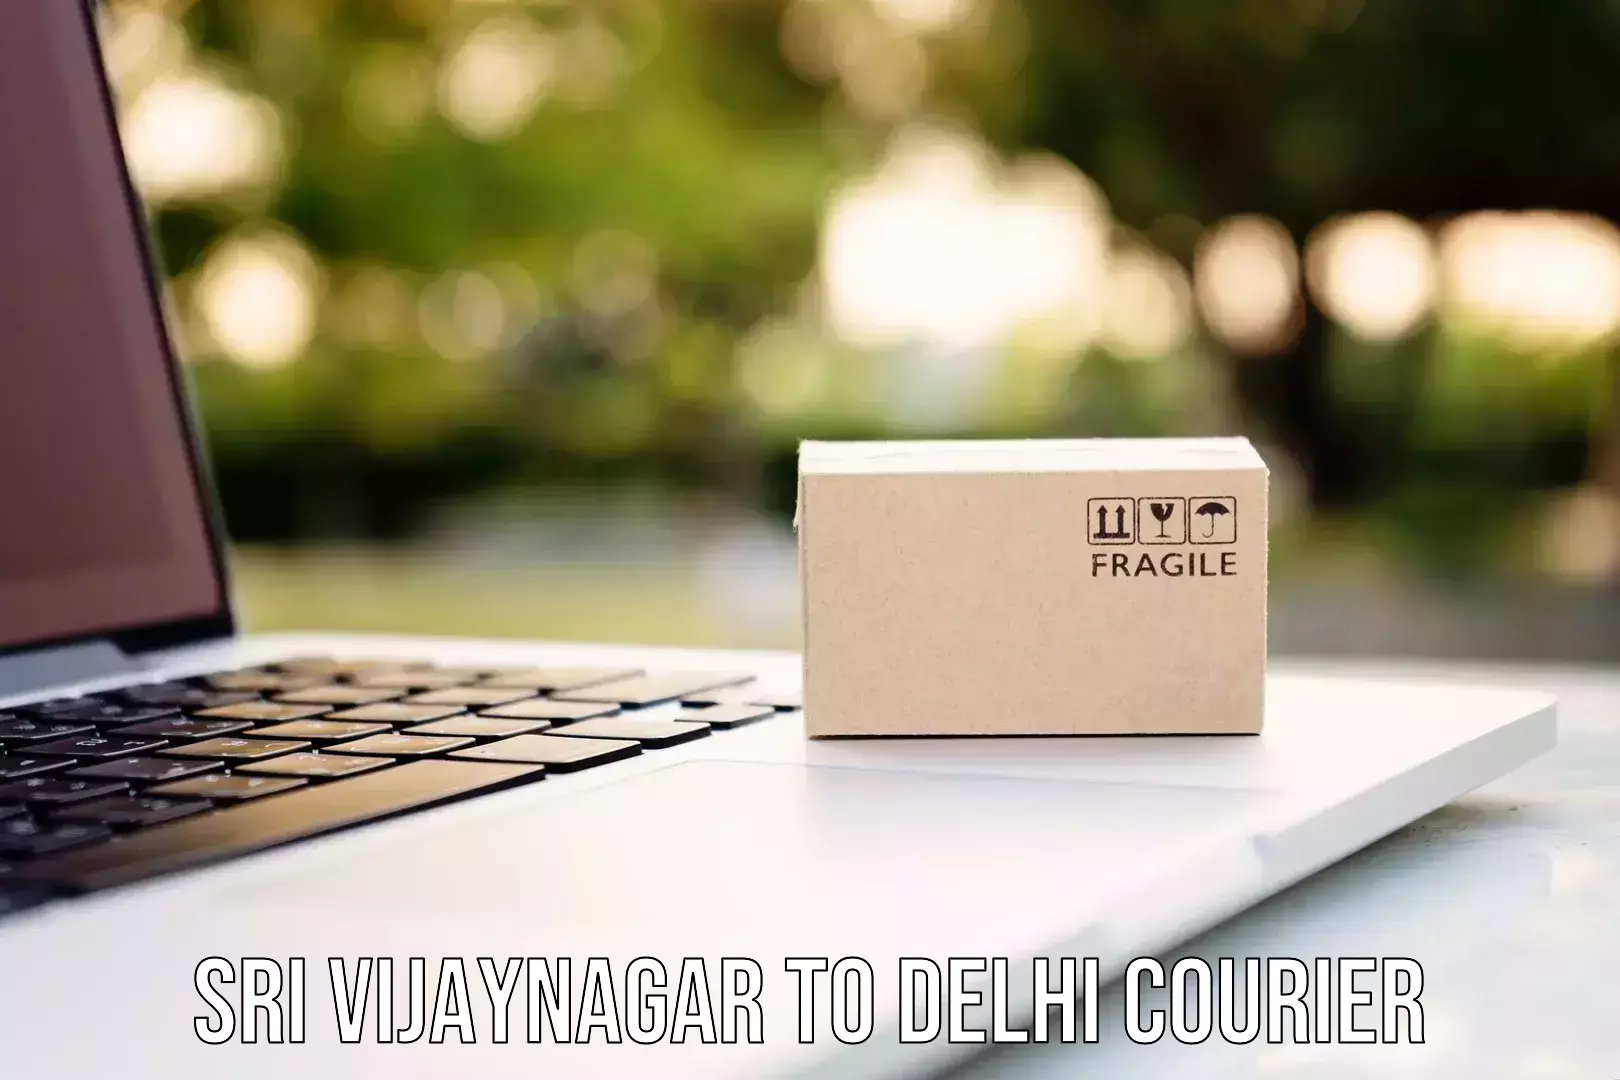 Courier insurance Sri Vijaynagar to University of Delhi